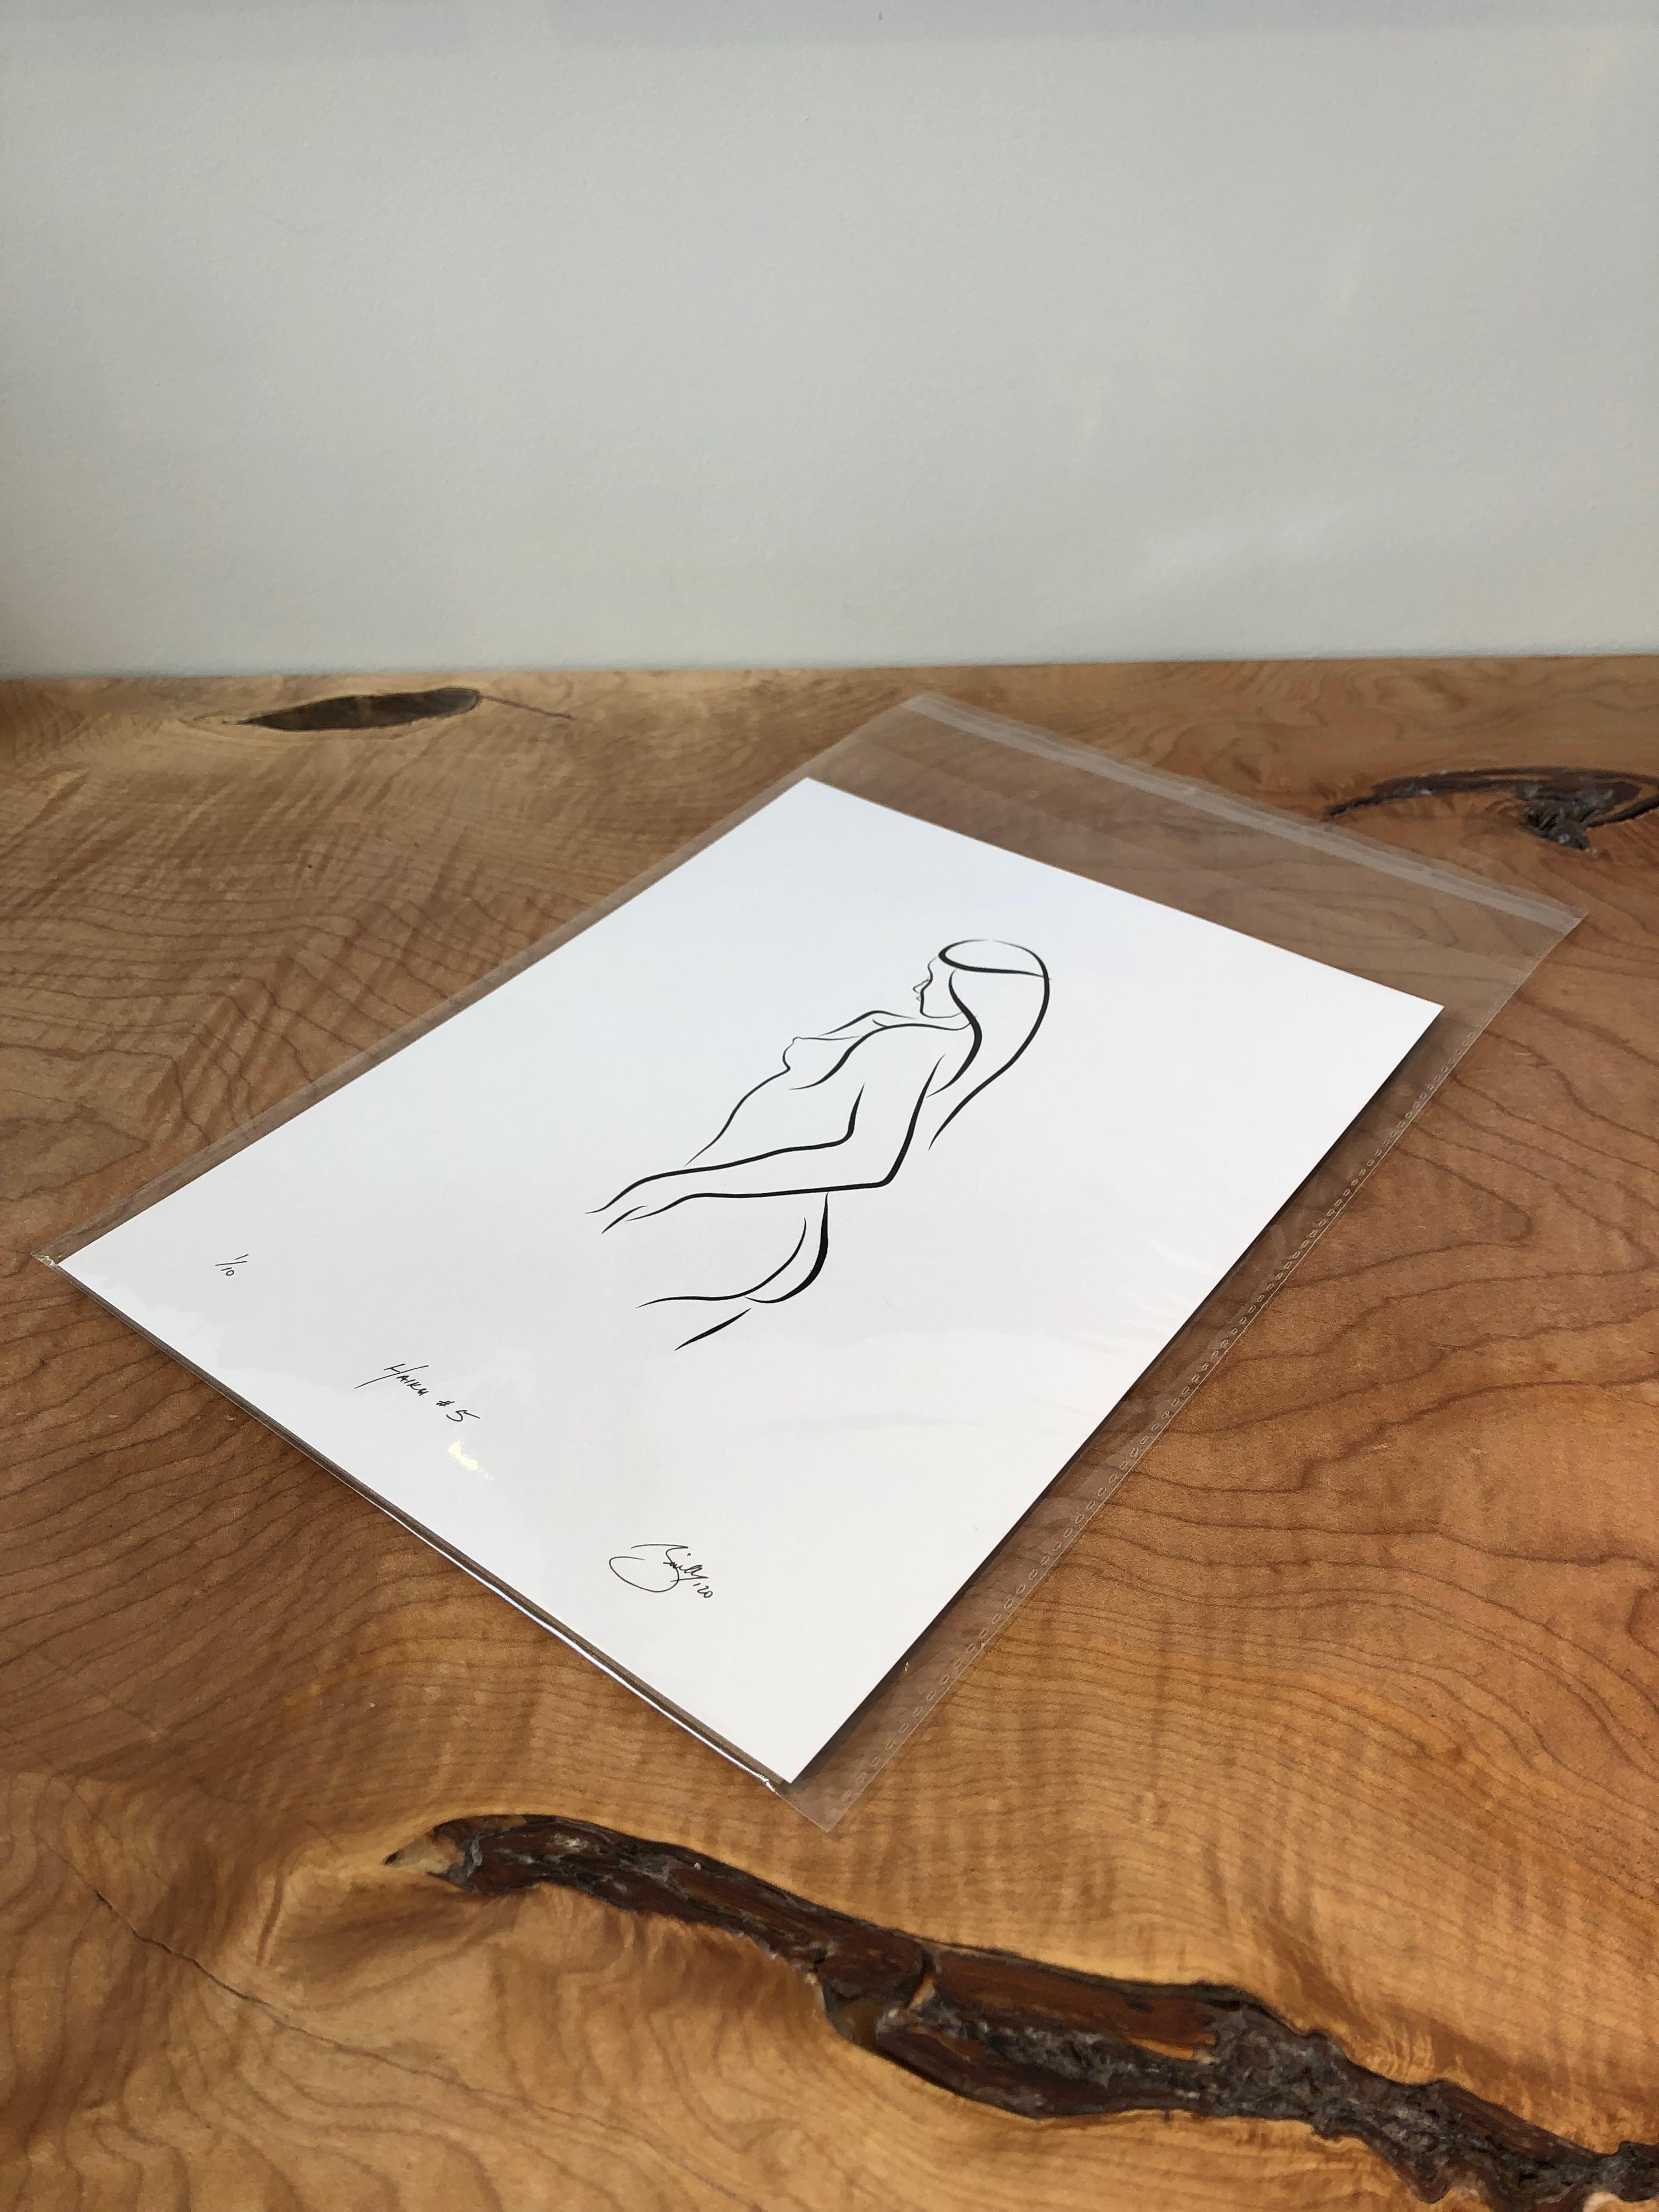 Haiku #5   - Digital Vector Drawing Standing Female Nude Woman Figure from Rear - Print by Michael Binkley